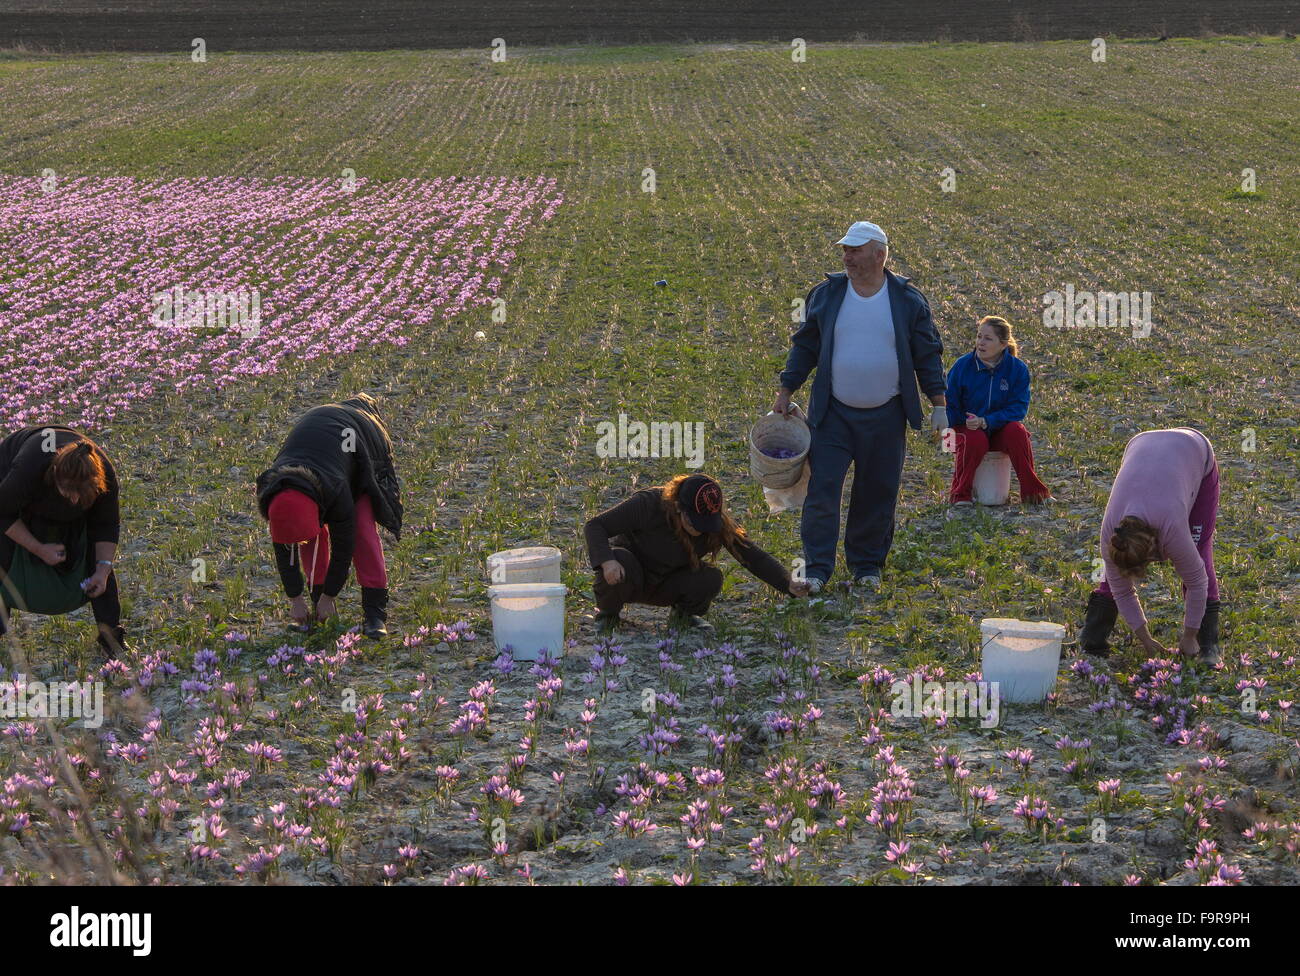 Pickers collecting saffron in the harvest season, near Kozani, Greece Stock Photo